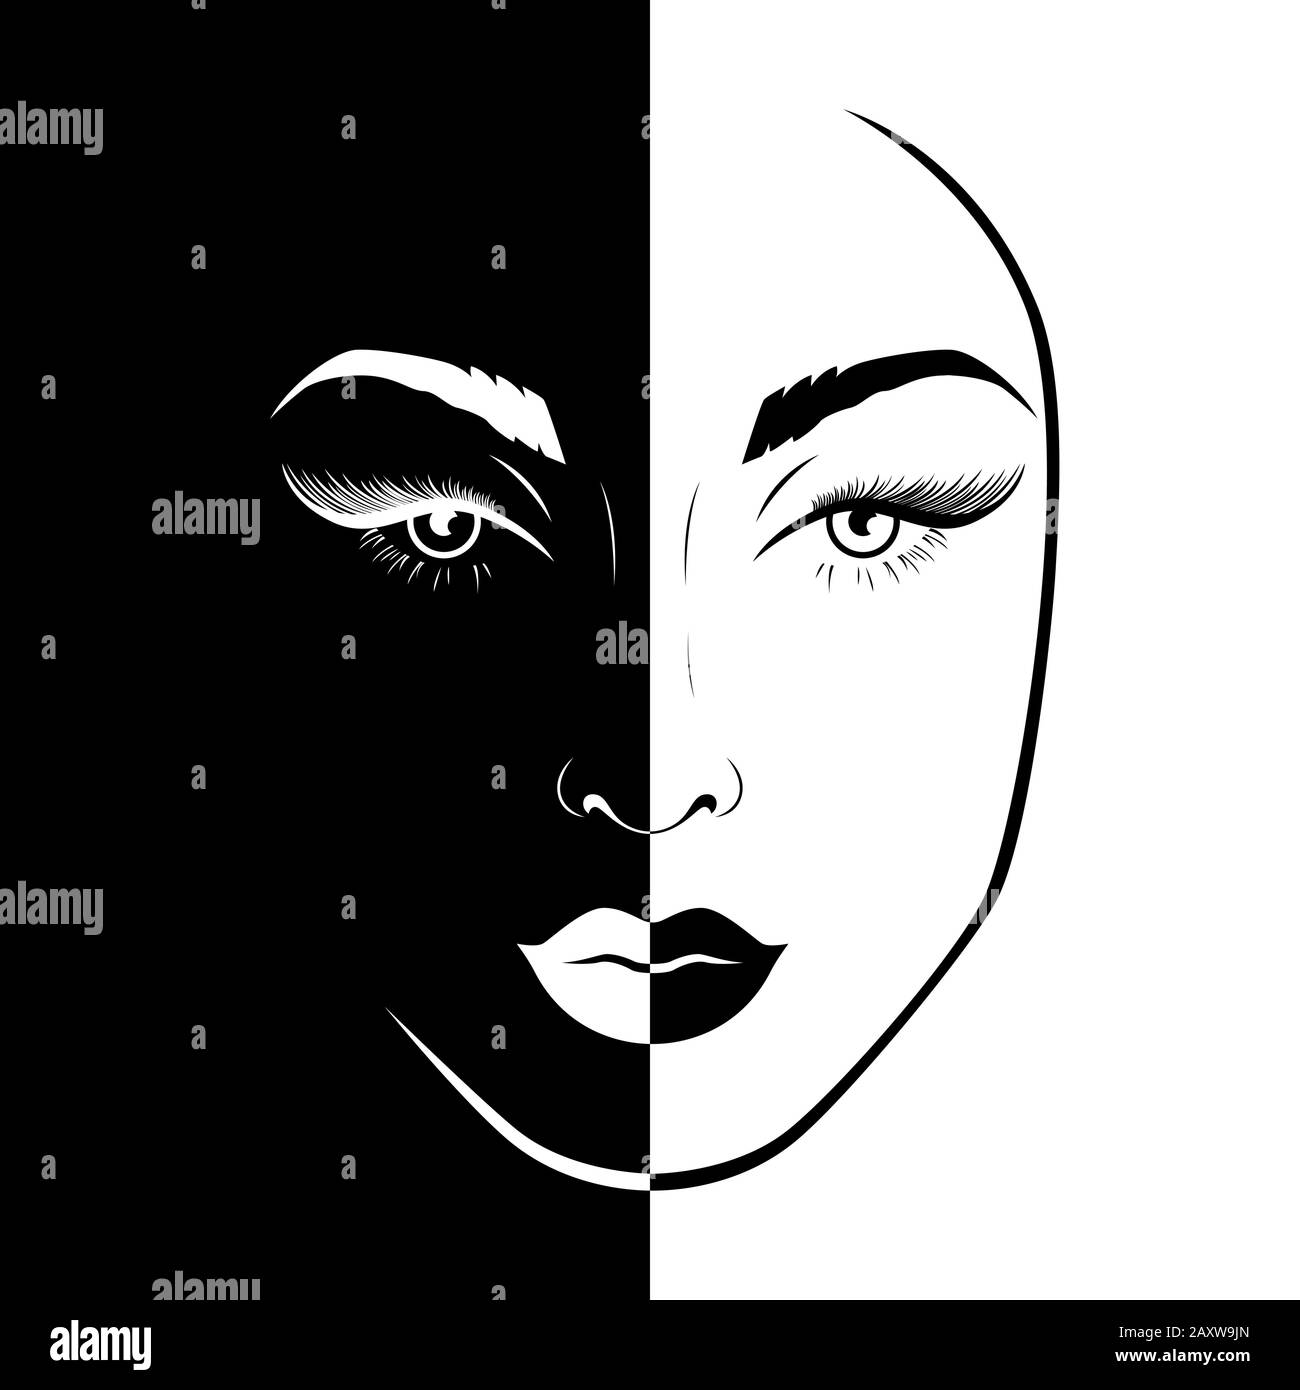 Résumé beau visage féminin split dans l'espace négatif positif, noir et blanc, de l'expression conceptuelle dessin illustration Illustration de Vecteur